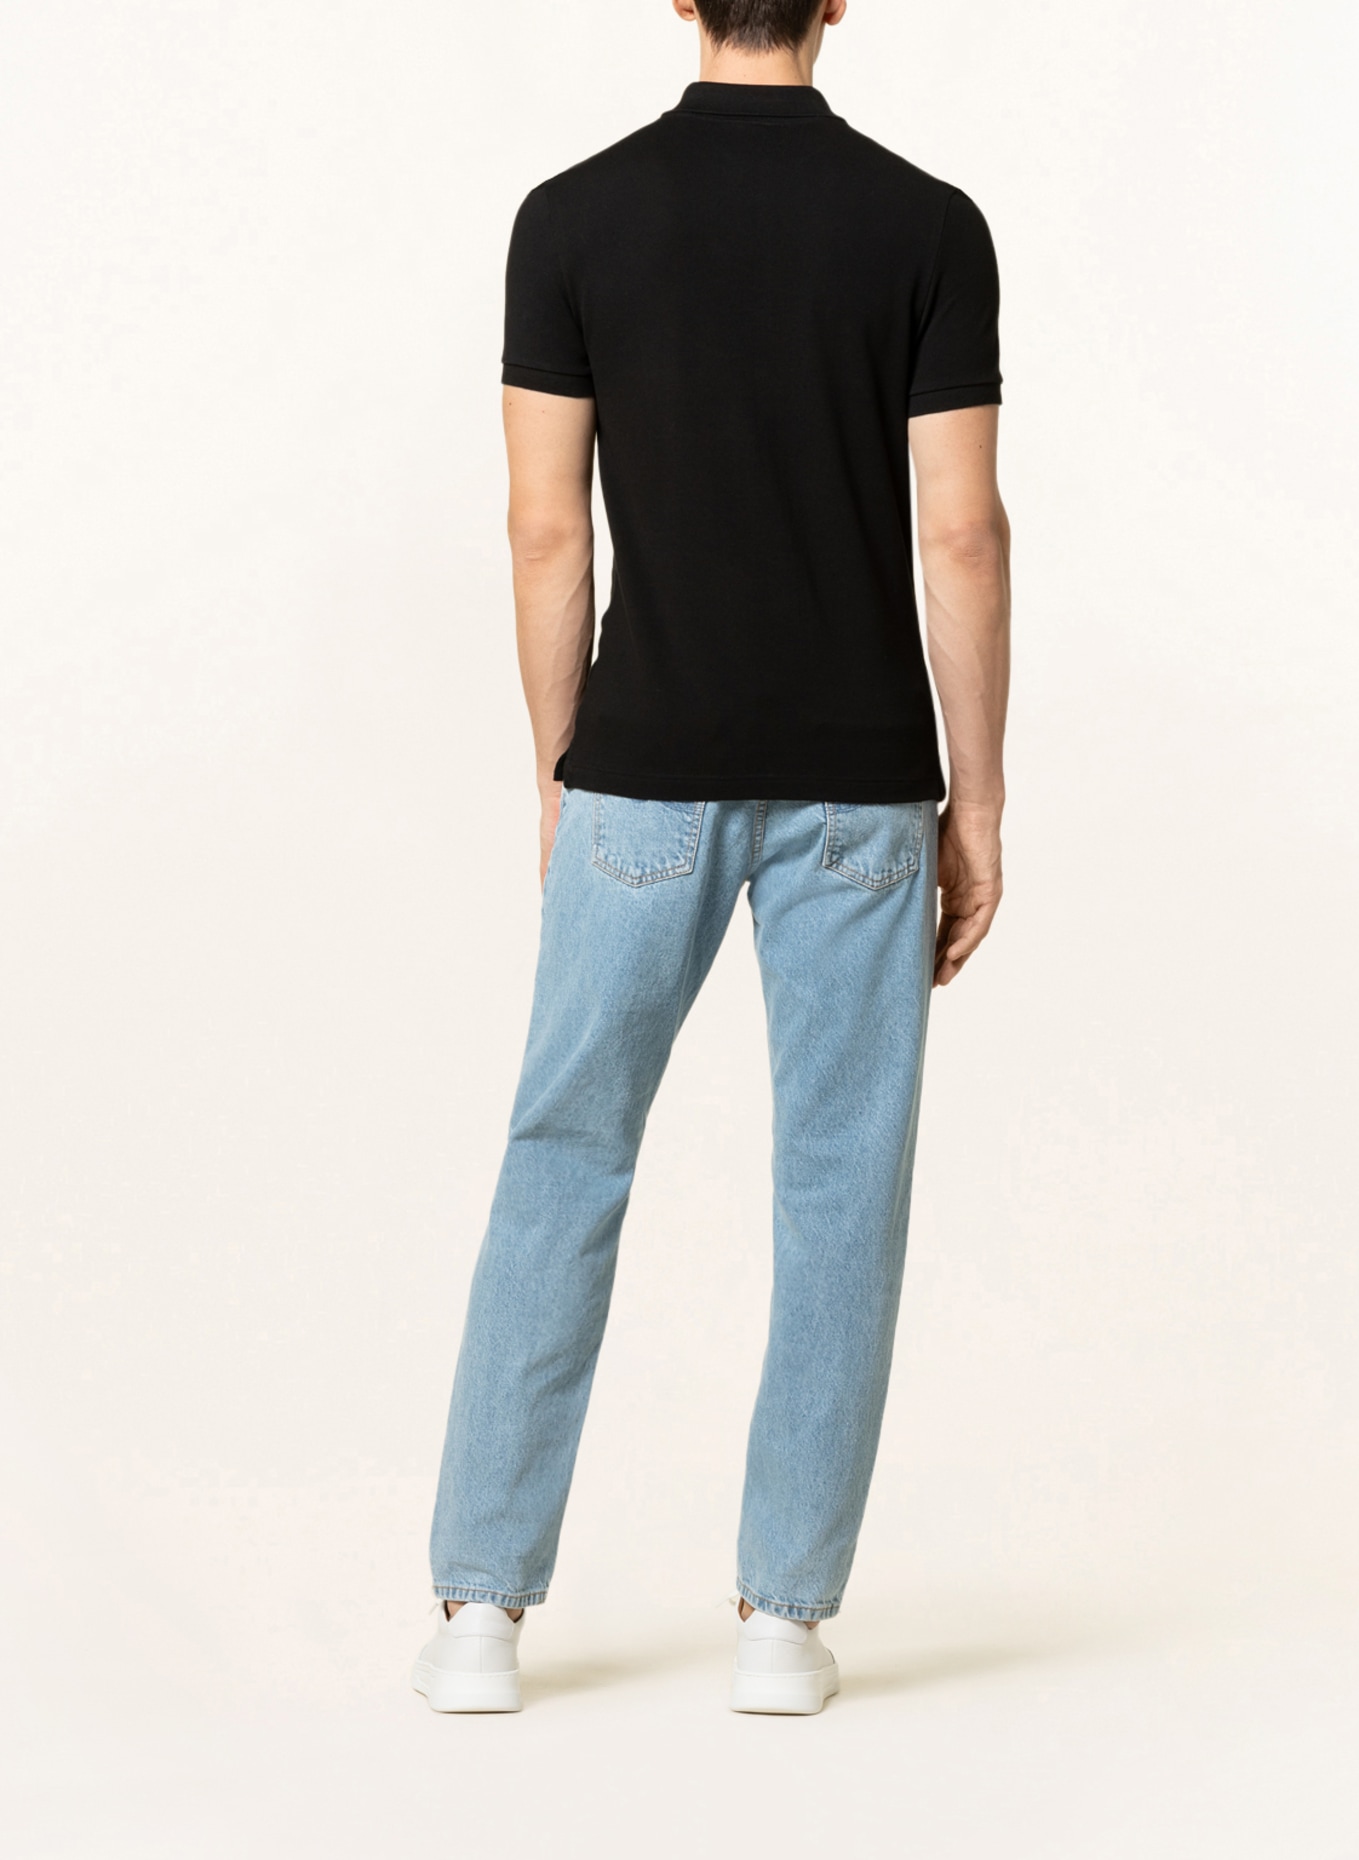 LACOSTE Piqué-Poloshirt Slim Fit, Farbe: SCHWARZ (Bild 3)